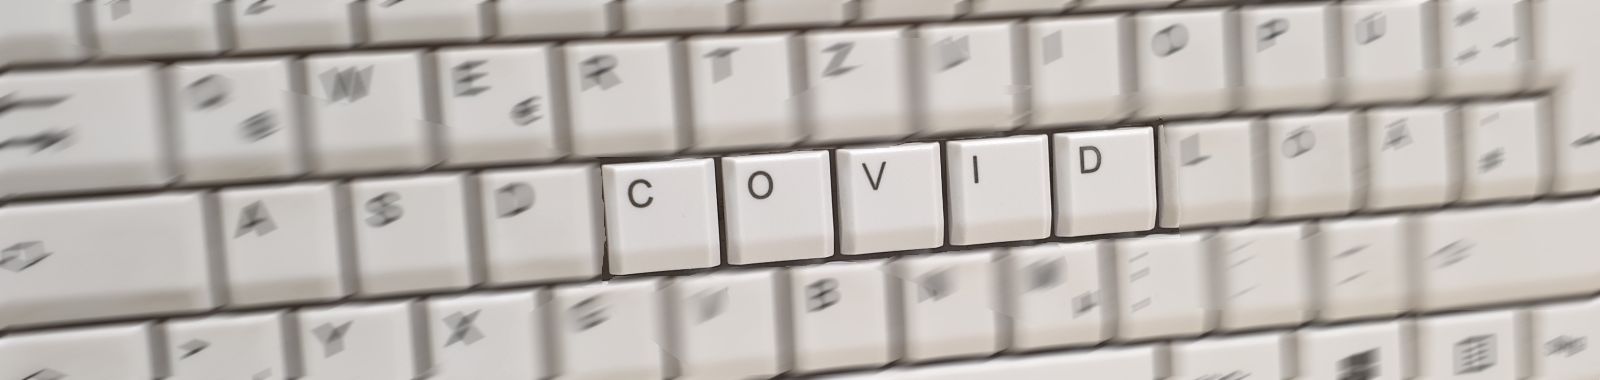 Illustrationsbild: Computertastatur mit COVID-Schriftzug, Bild: S-Krummer